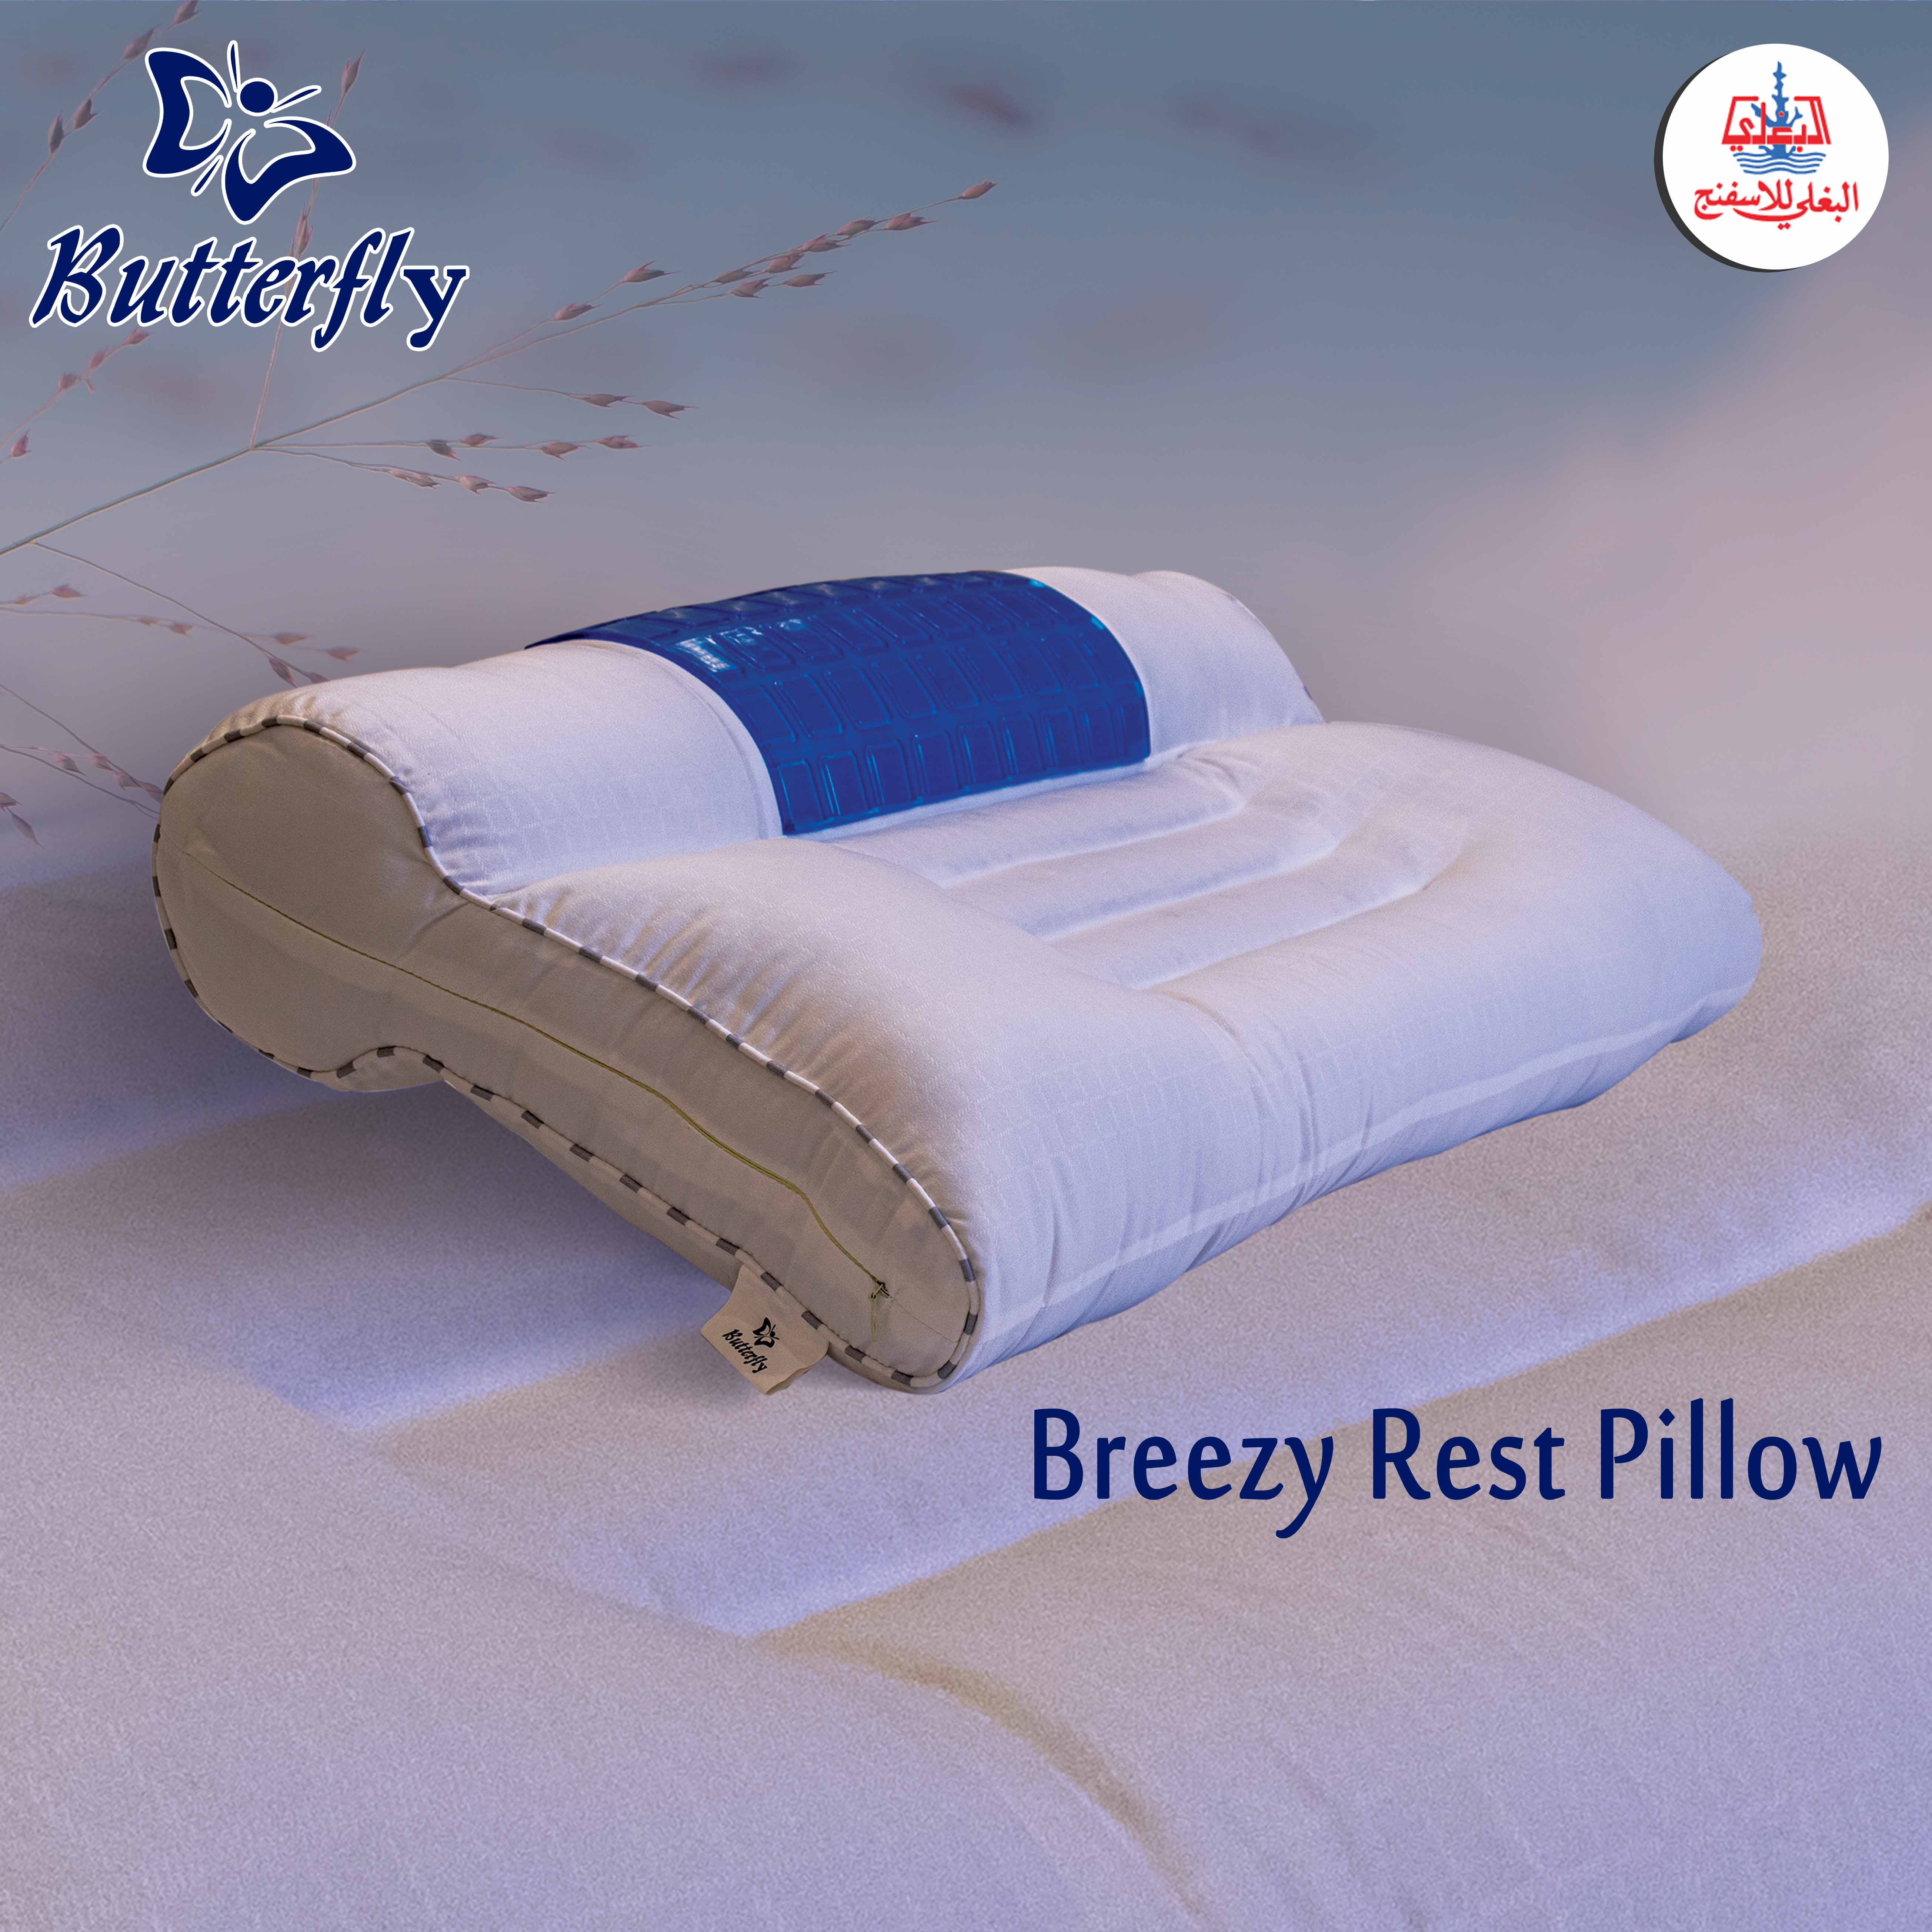 Butterfly Breezy Rest Pillow